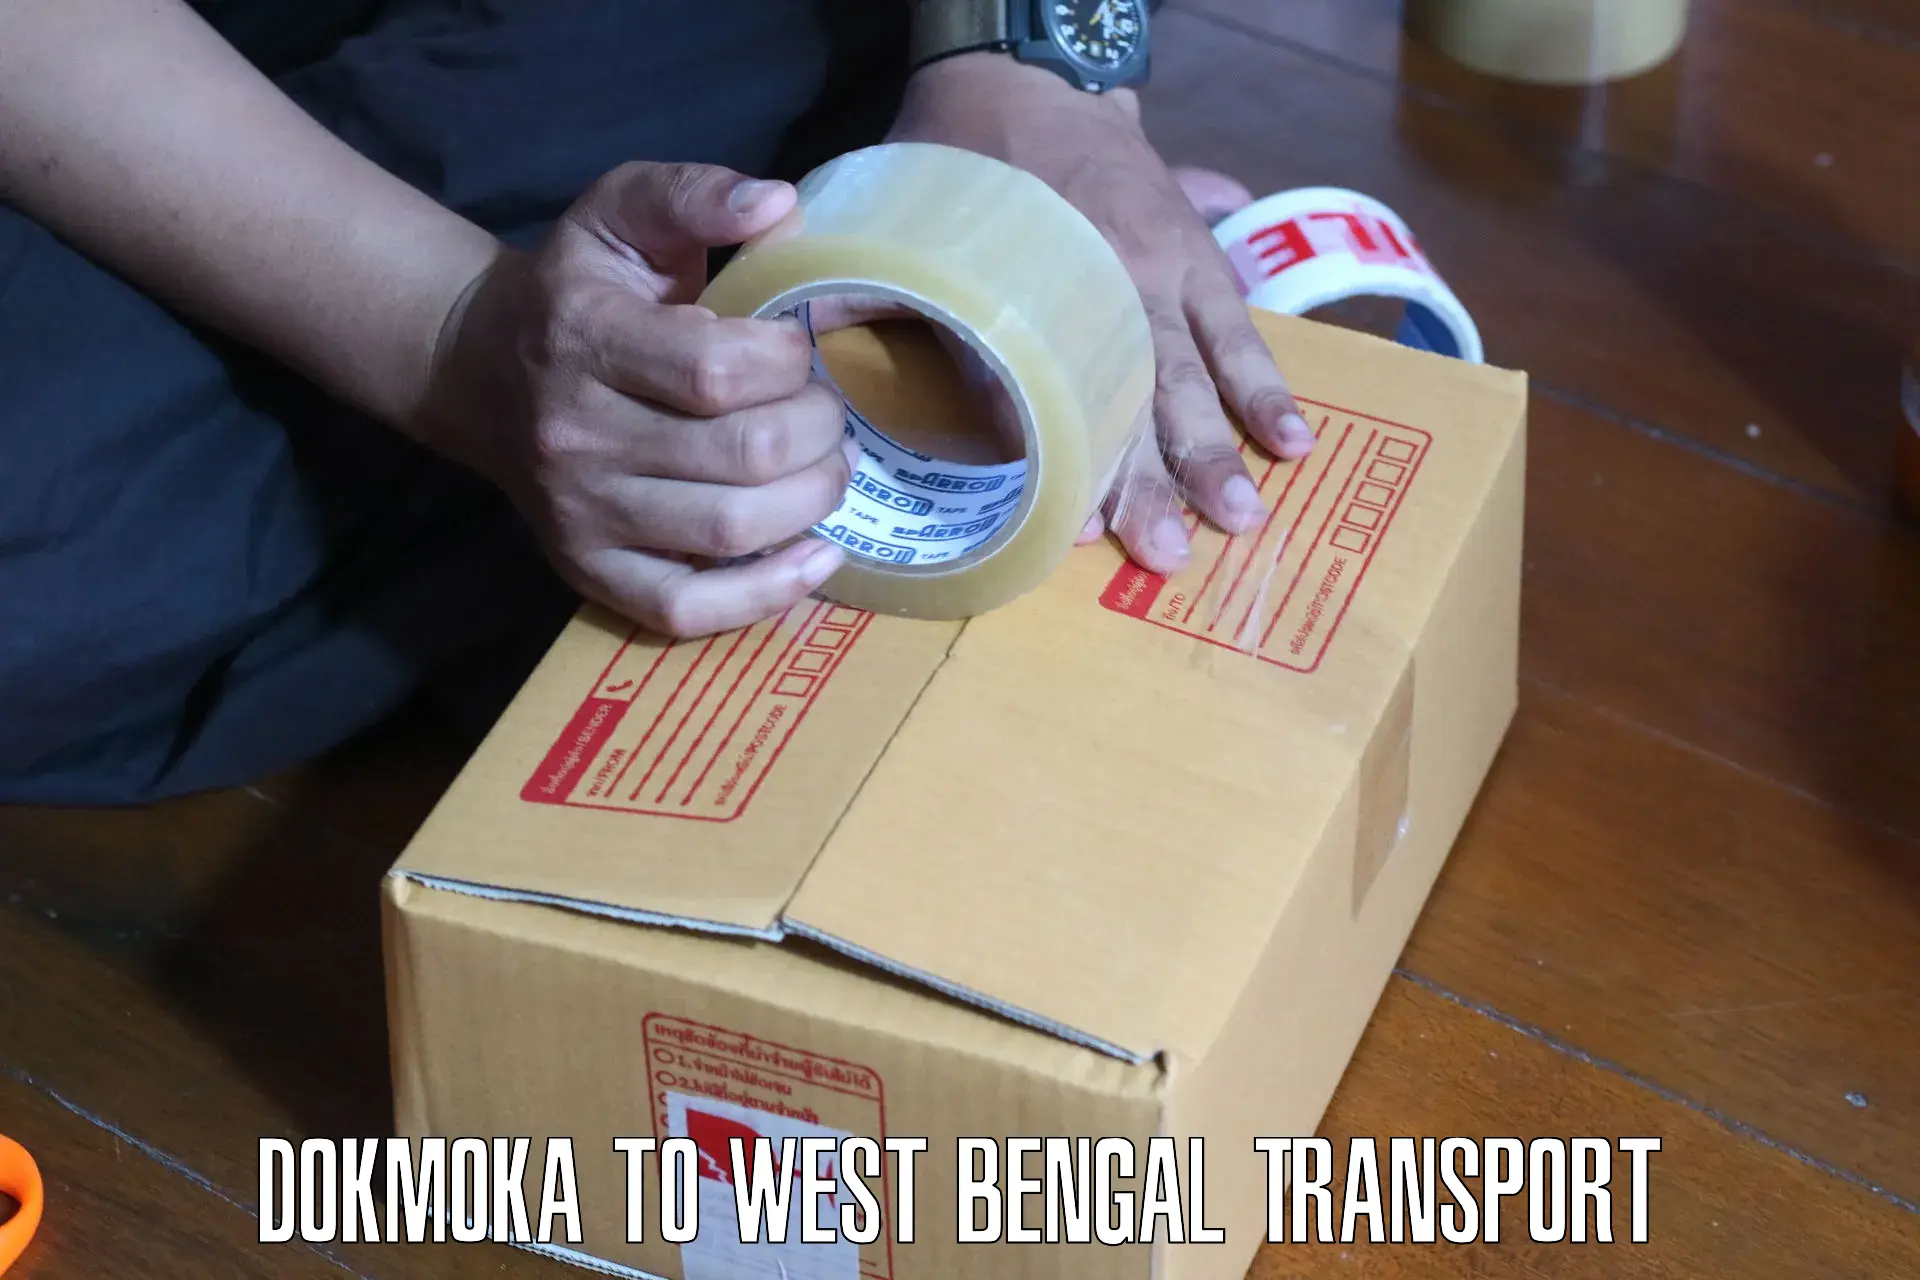 Two wheeler transport services Dokmoka to Bongaon